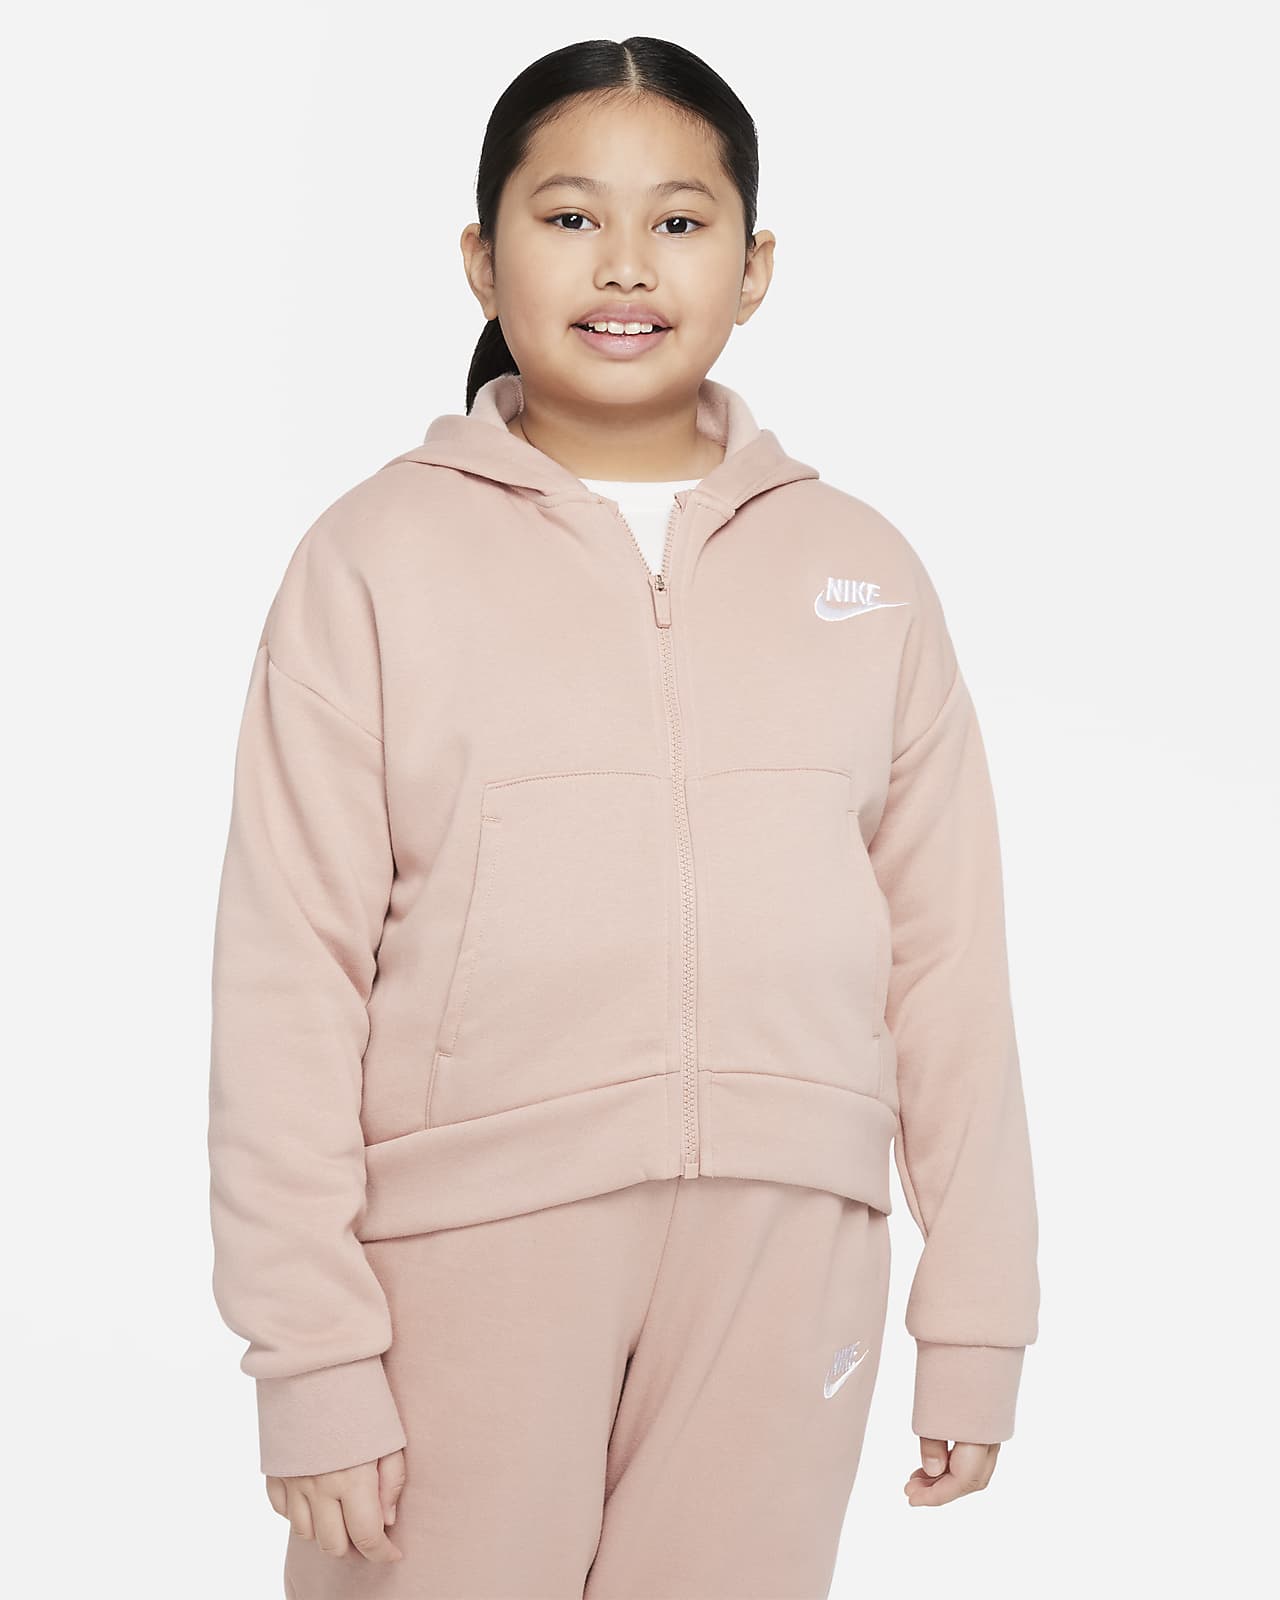 Mikina Nike Sportswear Club Fleece pro větší děti (dívky) s kapucí a zipem po celé délce (rozšířená velikost)